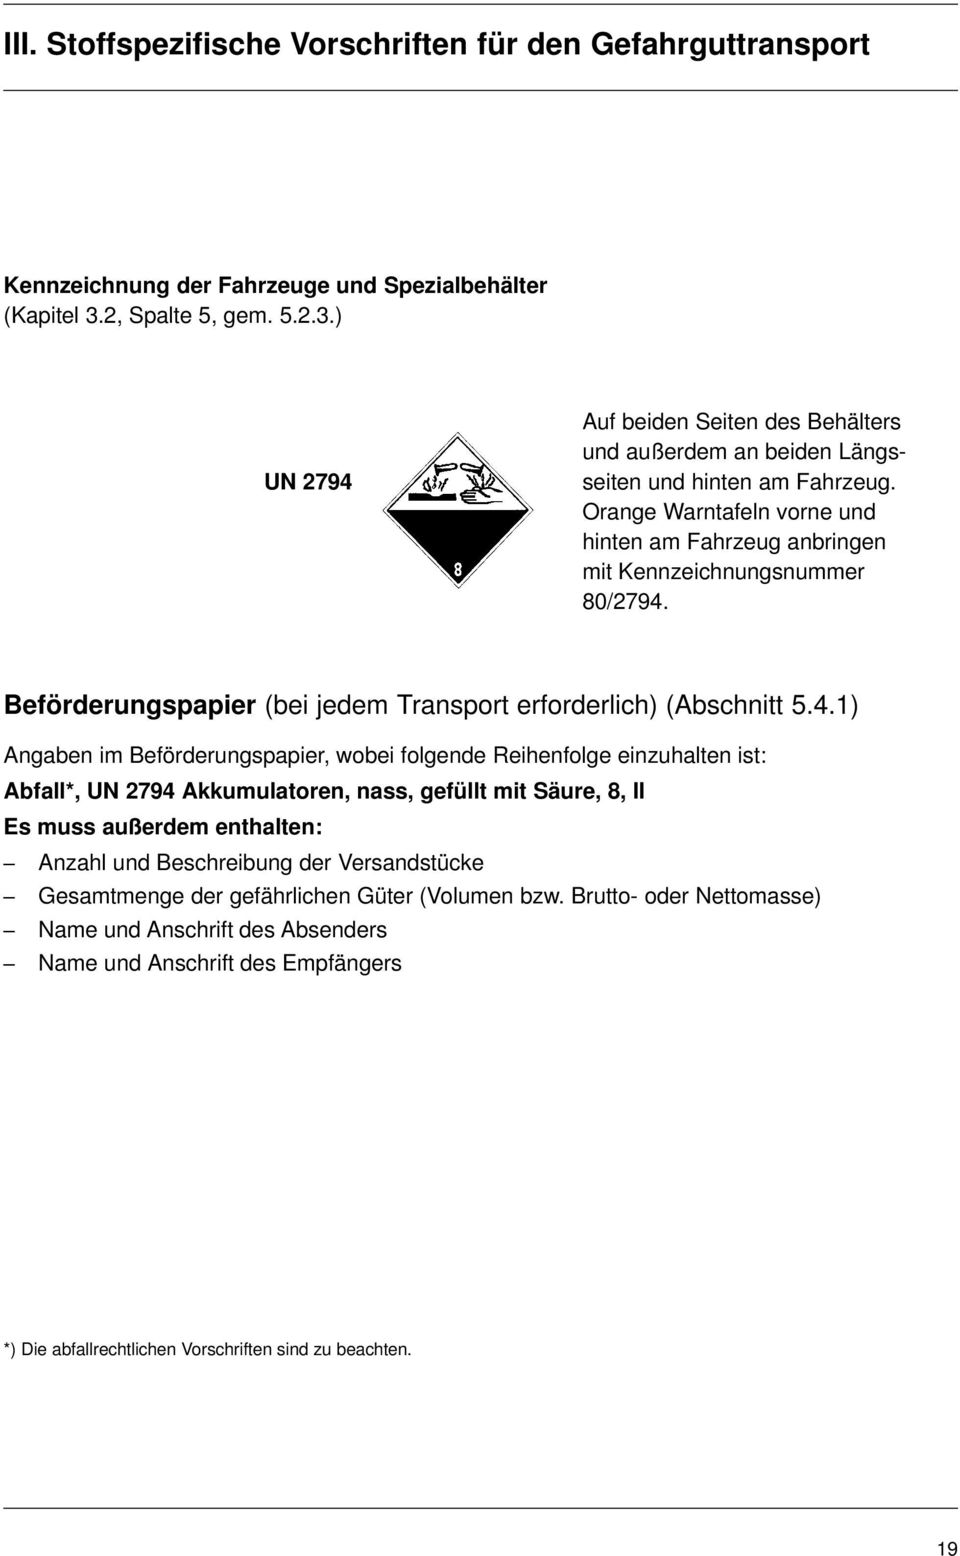 Beförderungspapier (bei jedem Transport erforderlich) (Abschnitt 5.4.